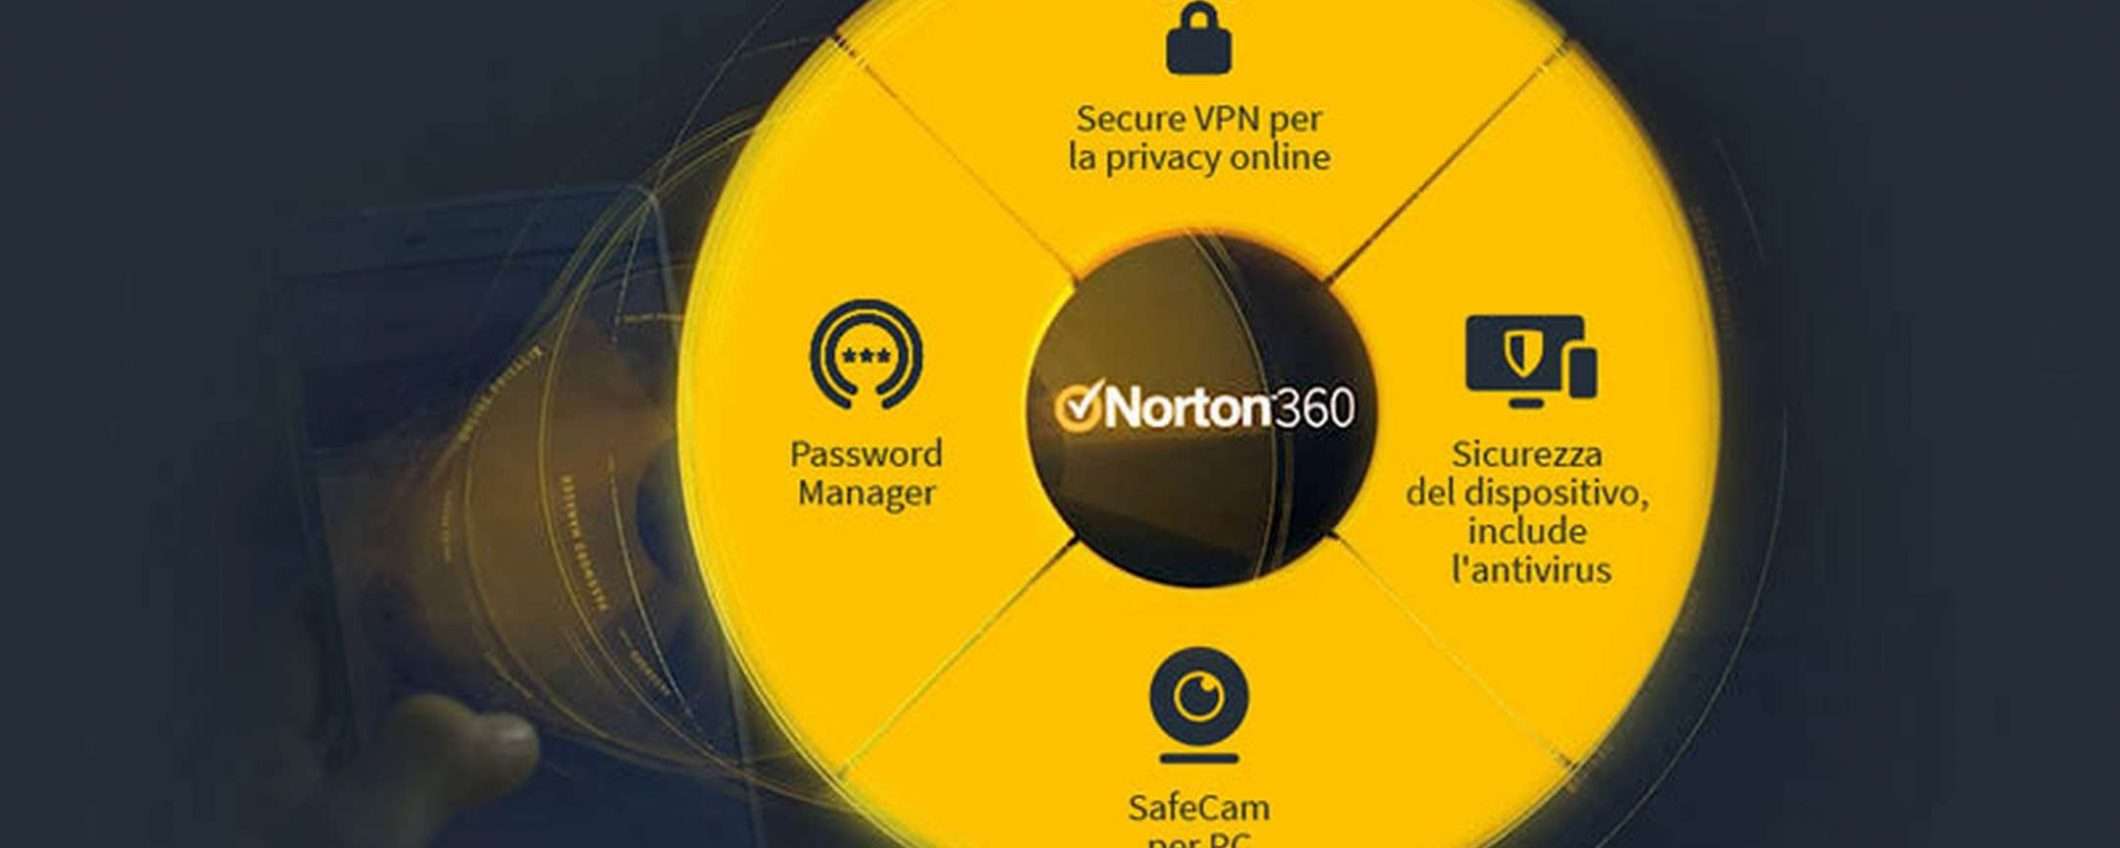 Norton 360: offerte imperdibili (sconto fino al 63%)